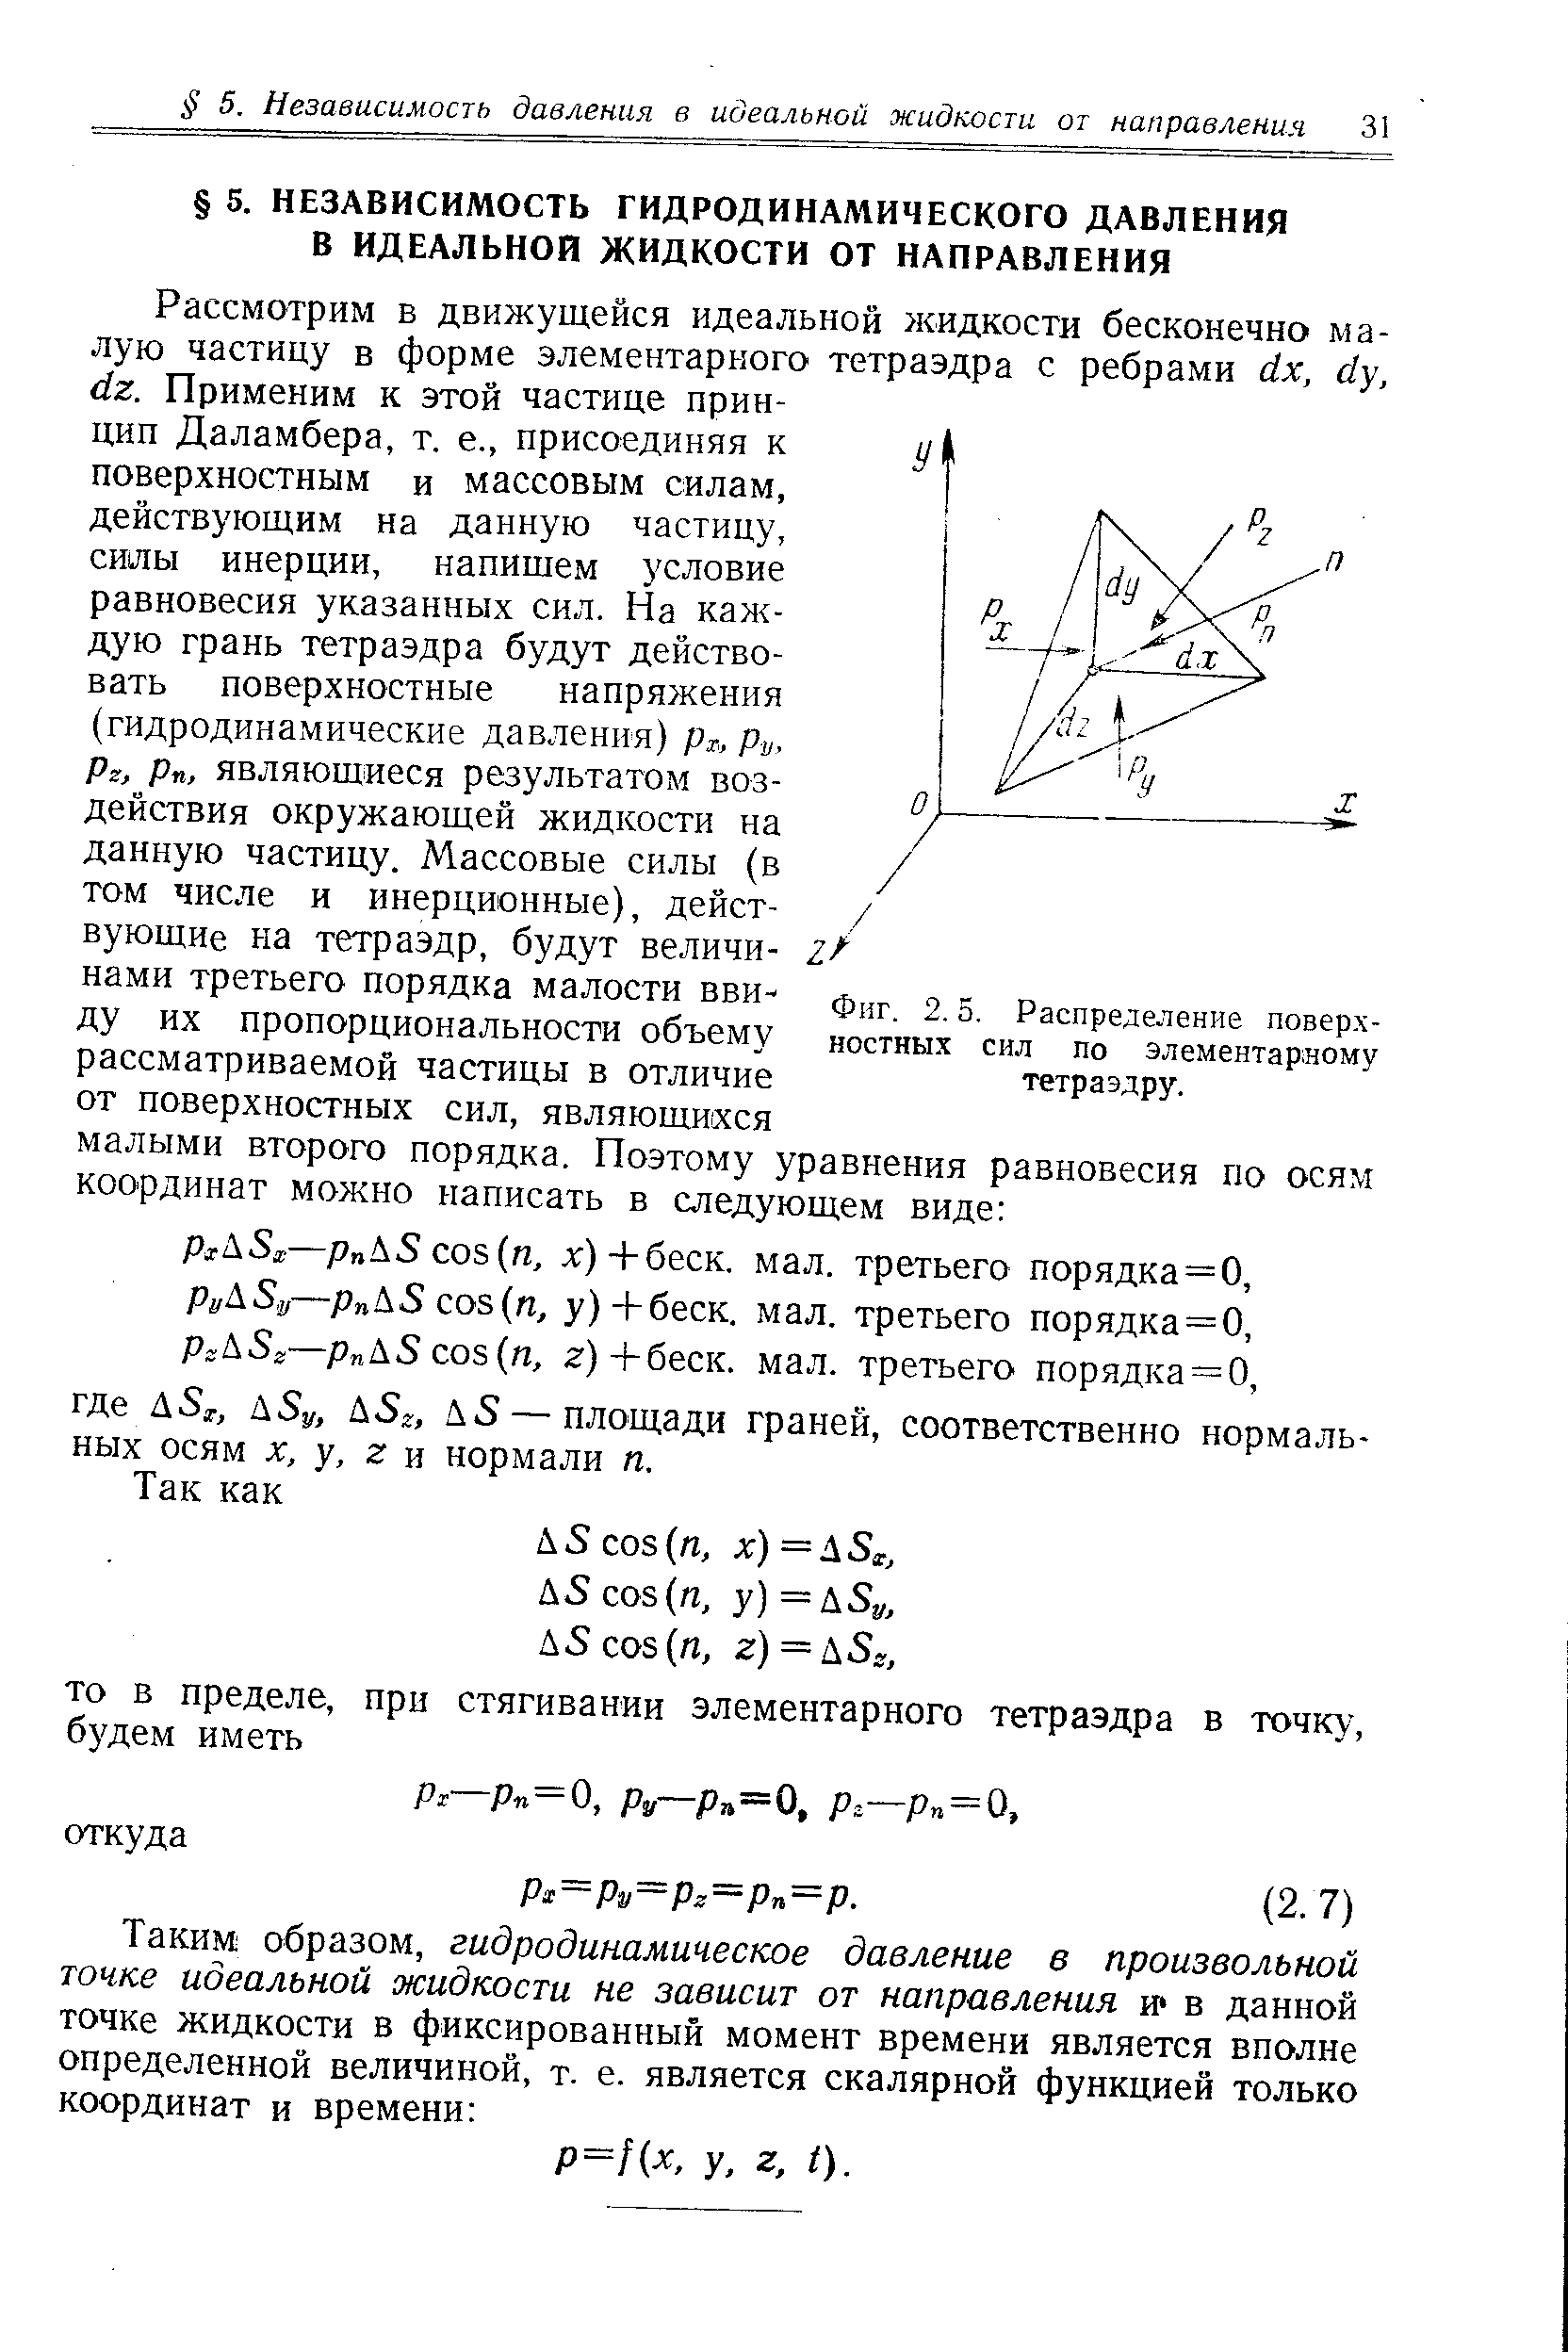 Фиг. 2.5, Распределение поверхностных сил по элементарному тетраэдру.
